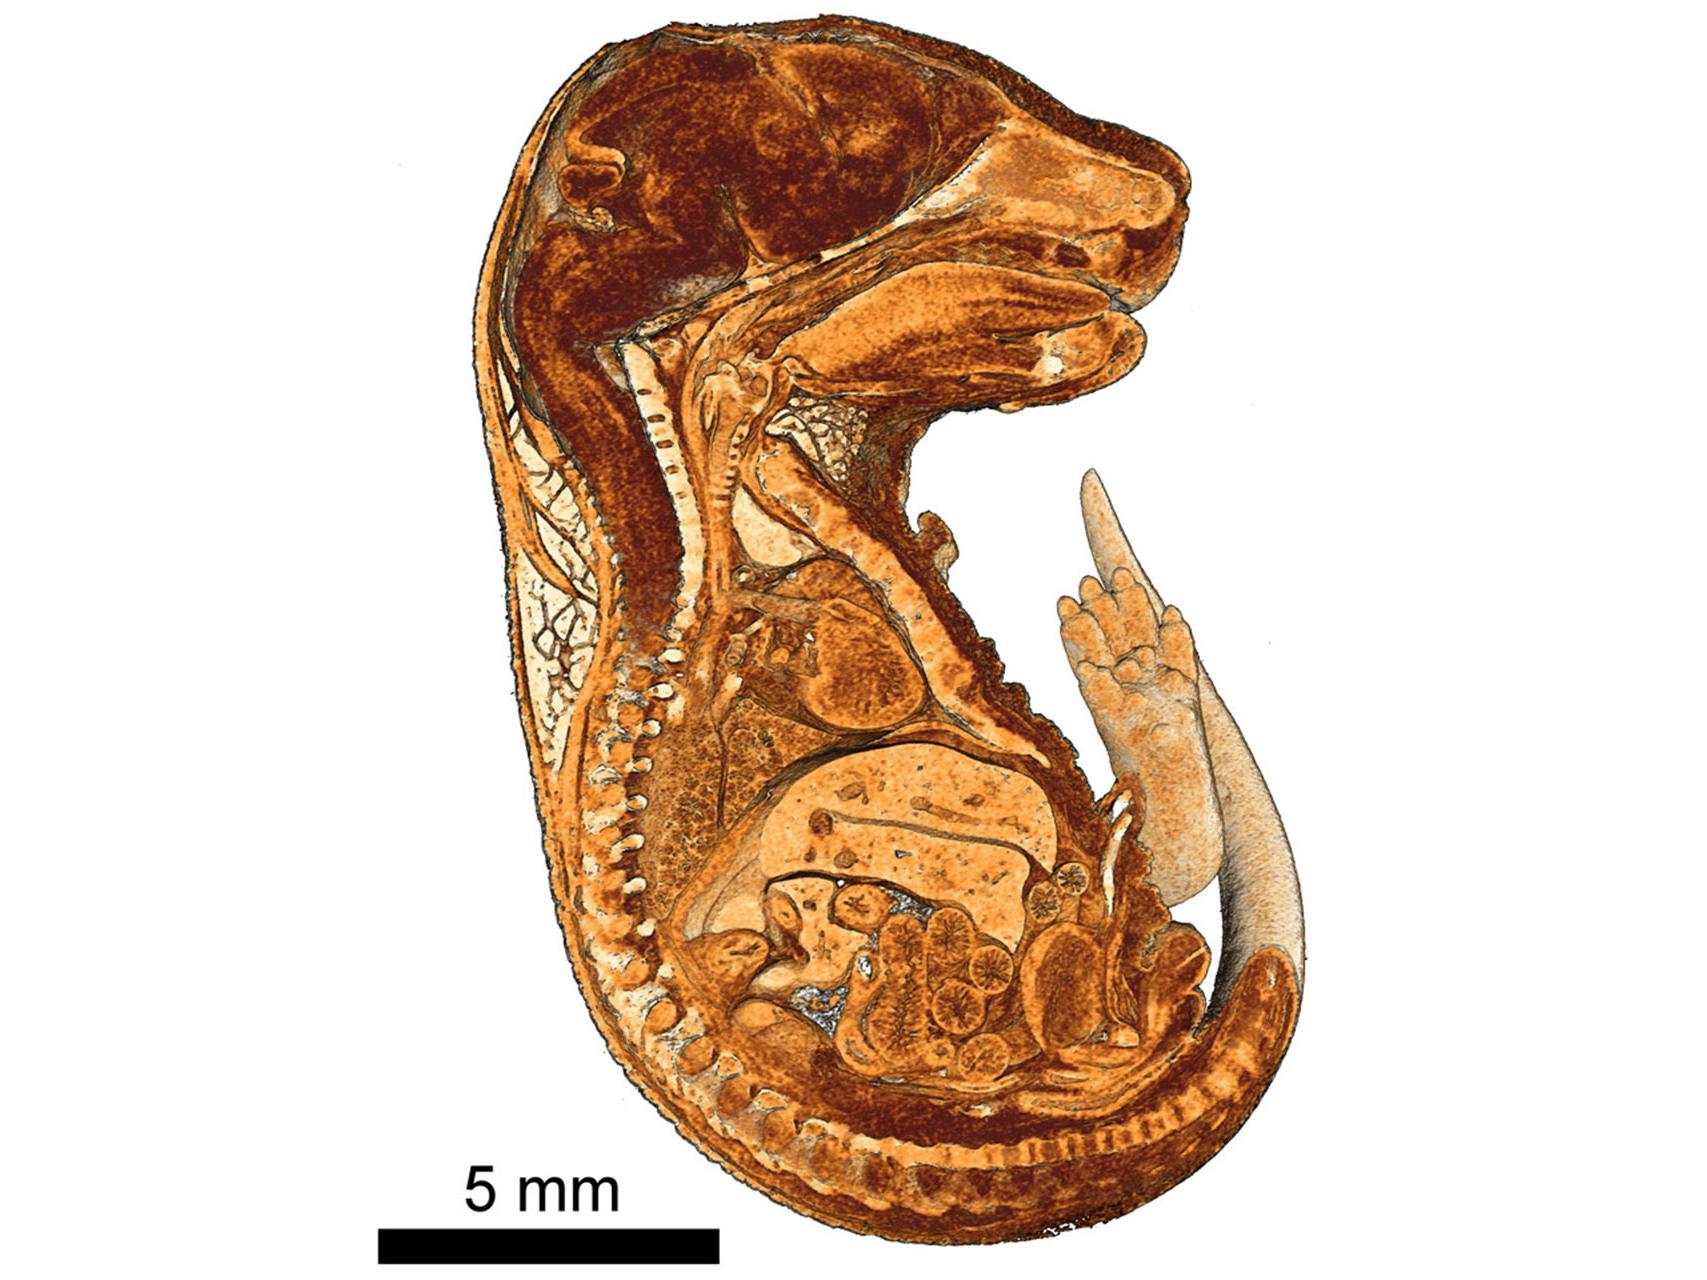 Vista en corte de renderizado 3D de un embrión de ratón embutido en parafina